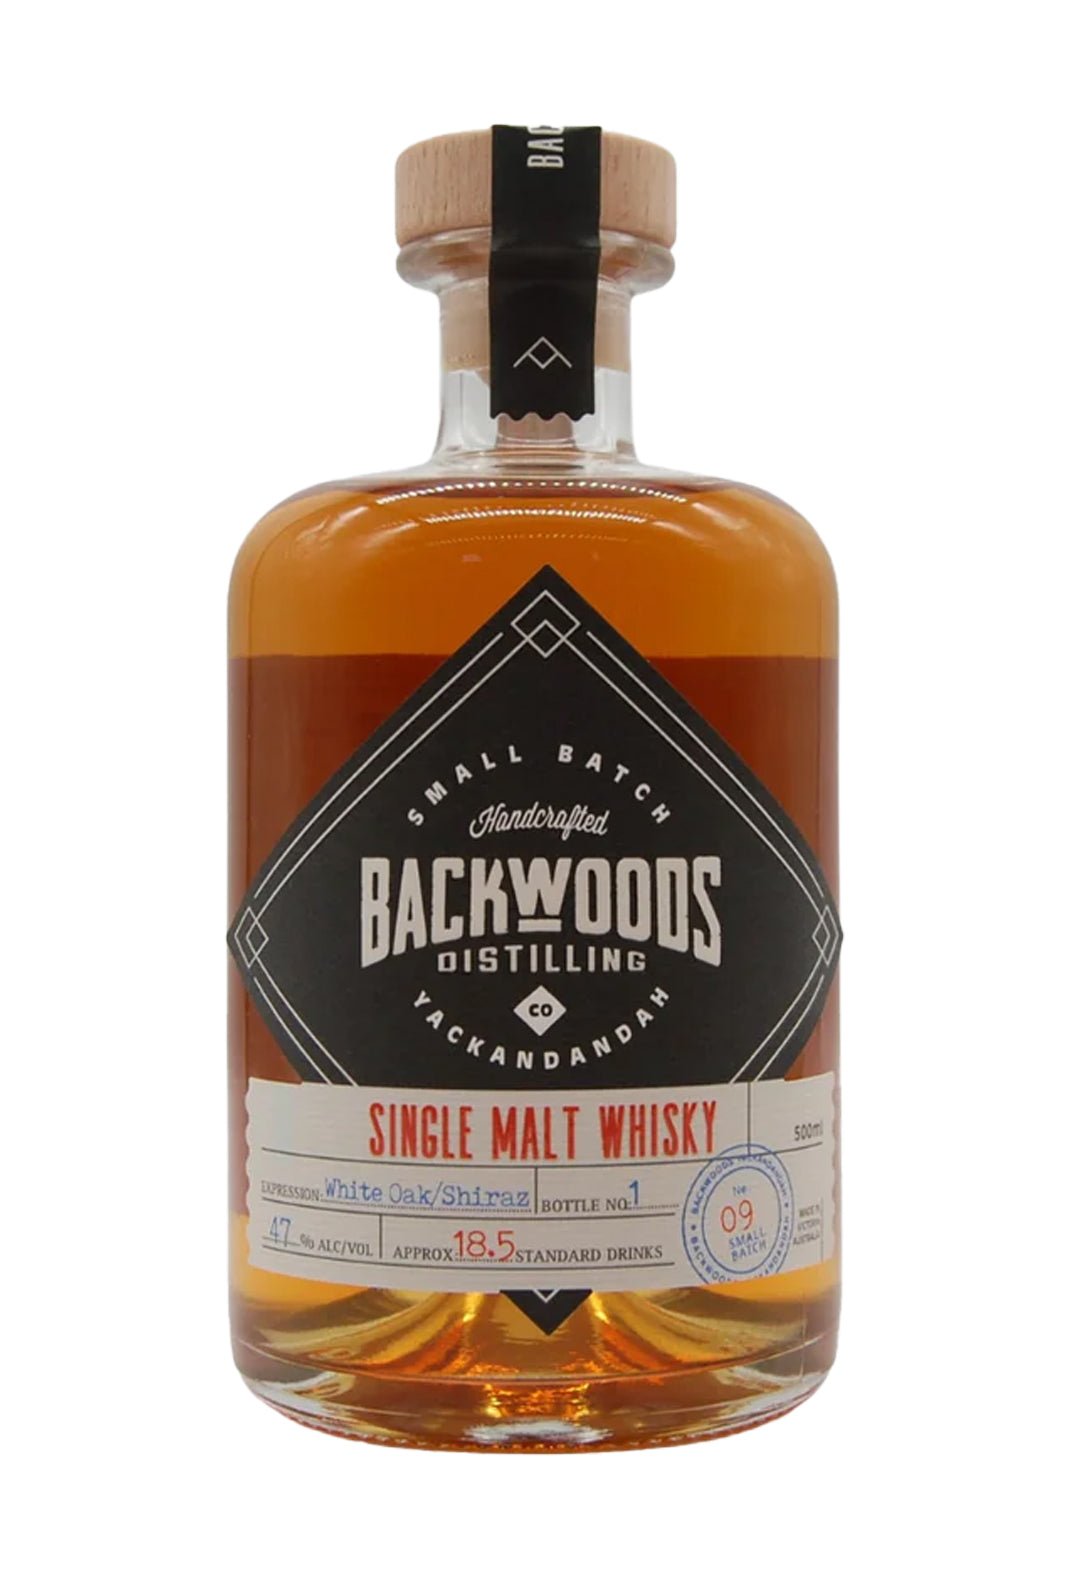 Backwoods Single Malt Batch 9 Corn Whisky cask 47% 500ml | Whisky | Shop online at Spirits of France